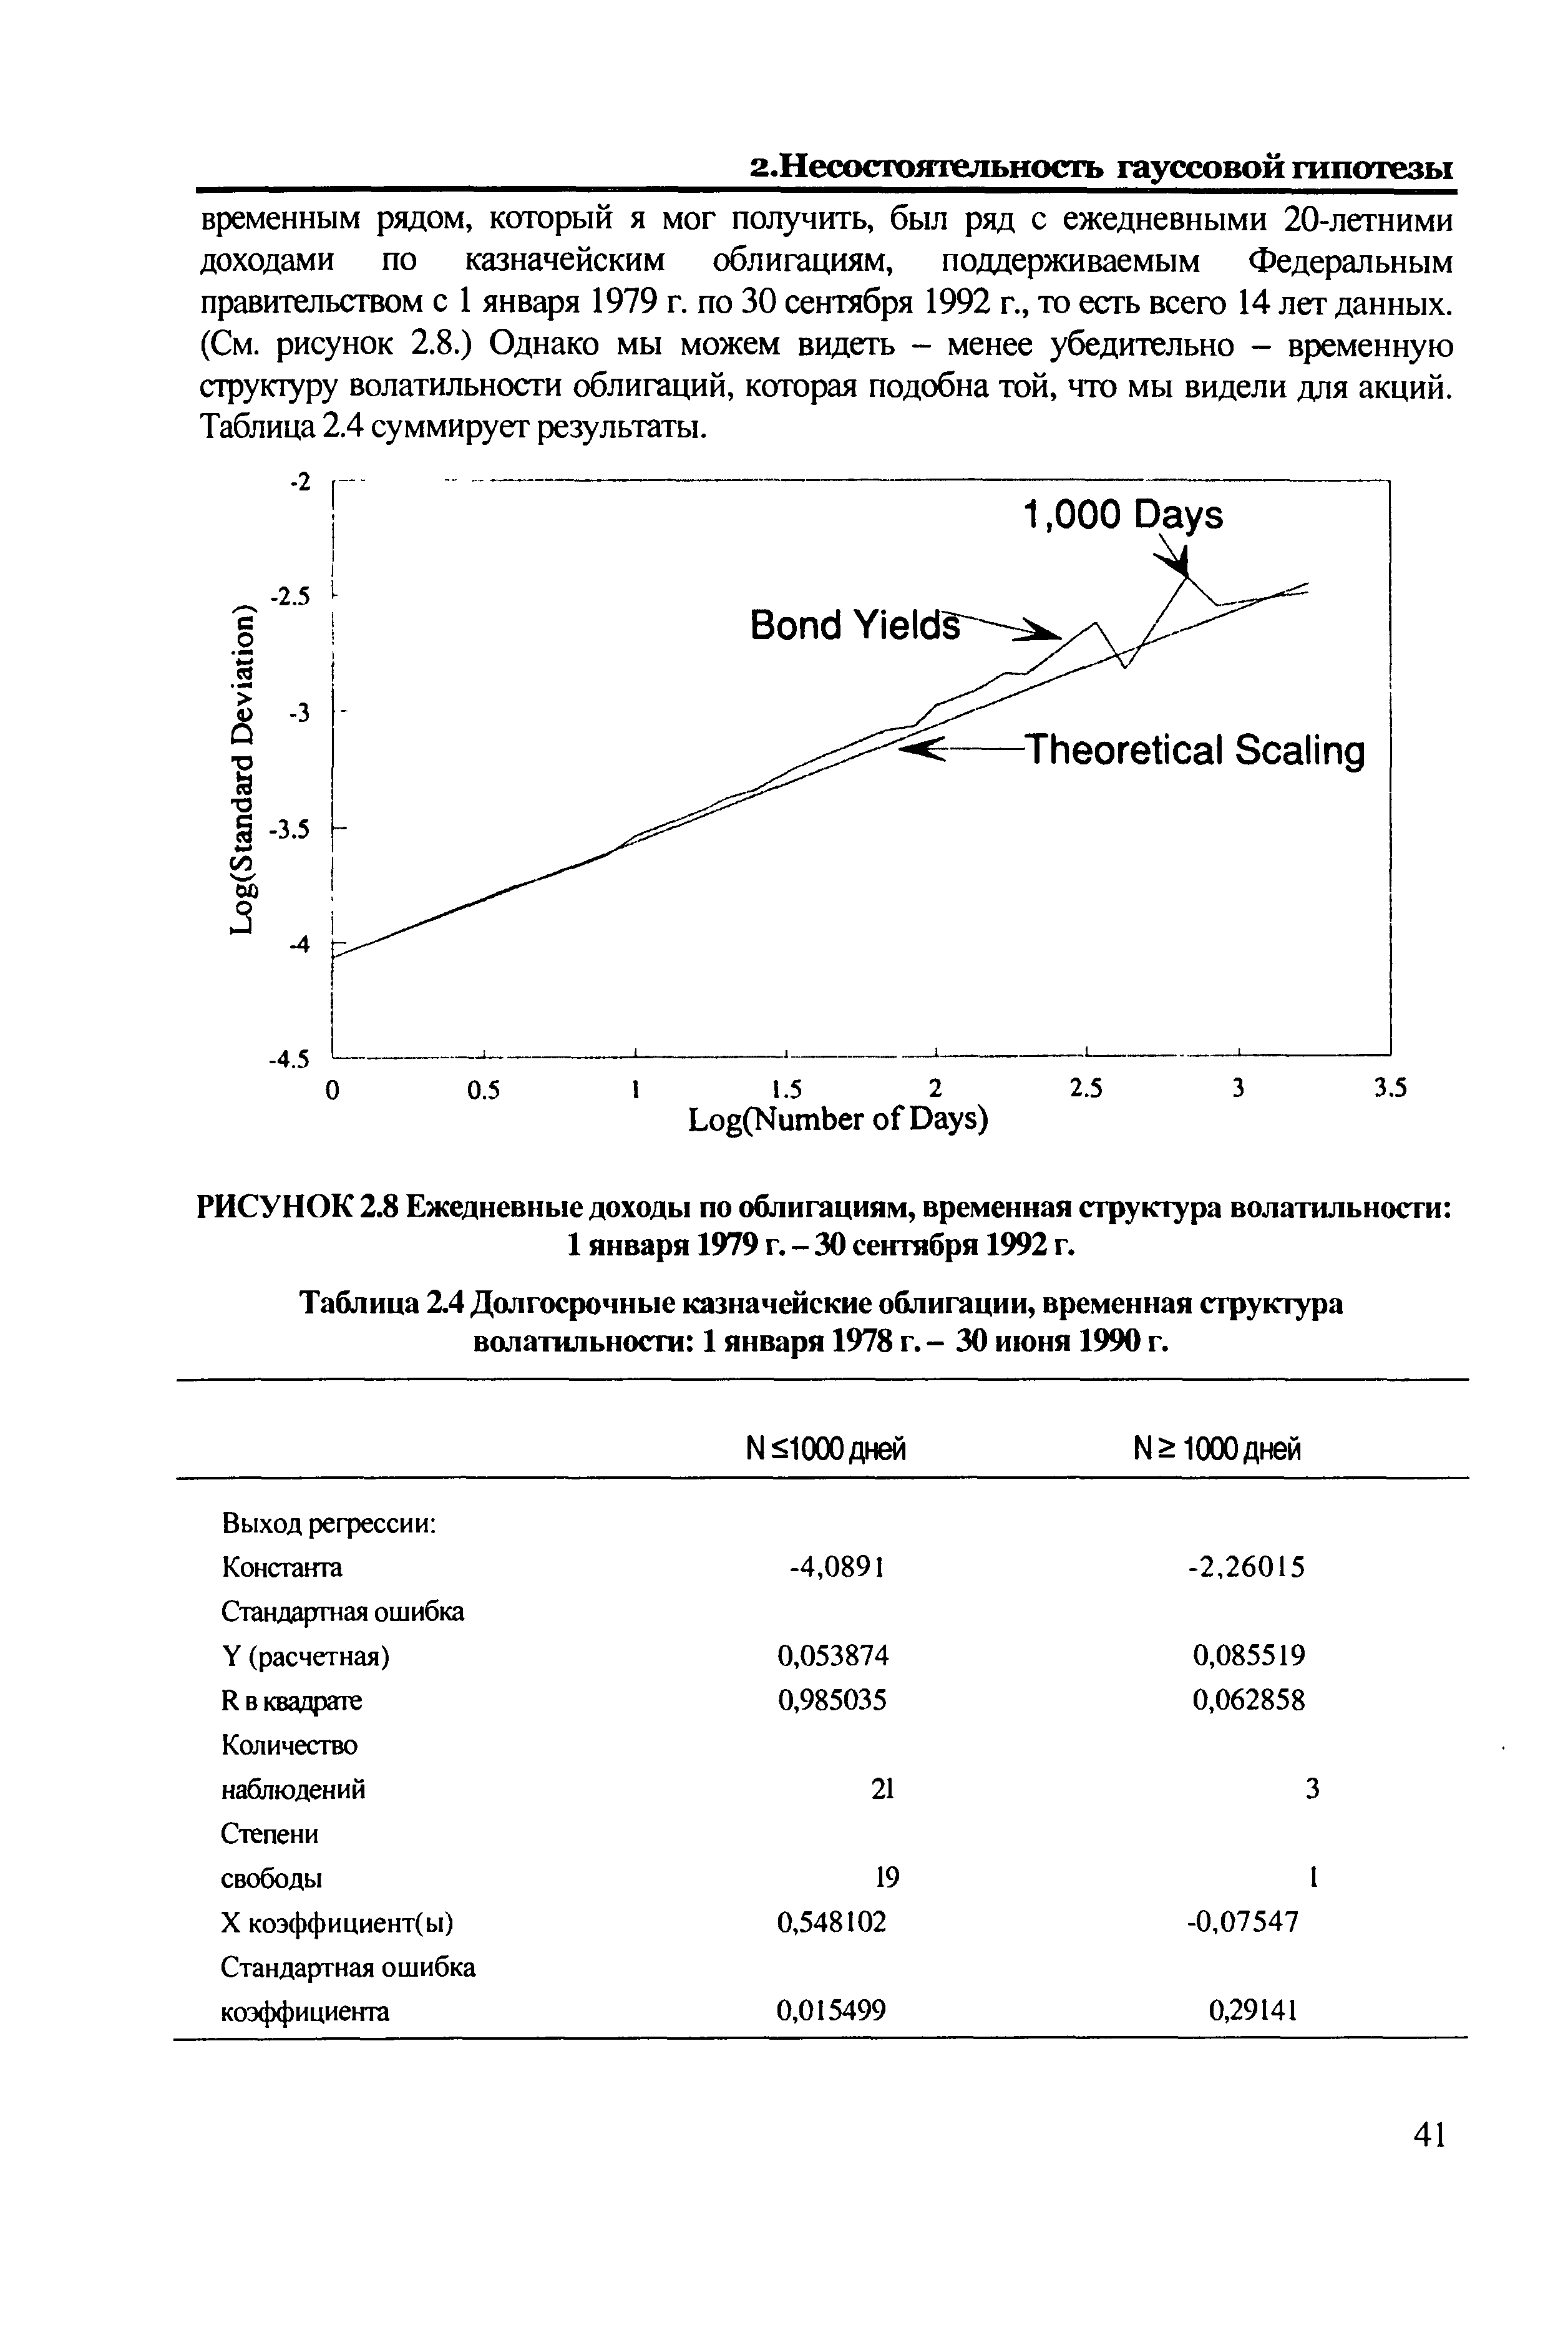 Таблица 2.4 <a href="/info/8166">Долгосрочные казначейские</a> облигации, временная структура волатильности 1 января 1978 г. - 30 июня 1990 г.
